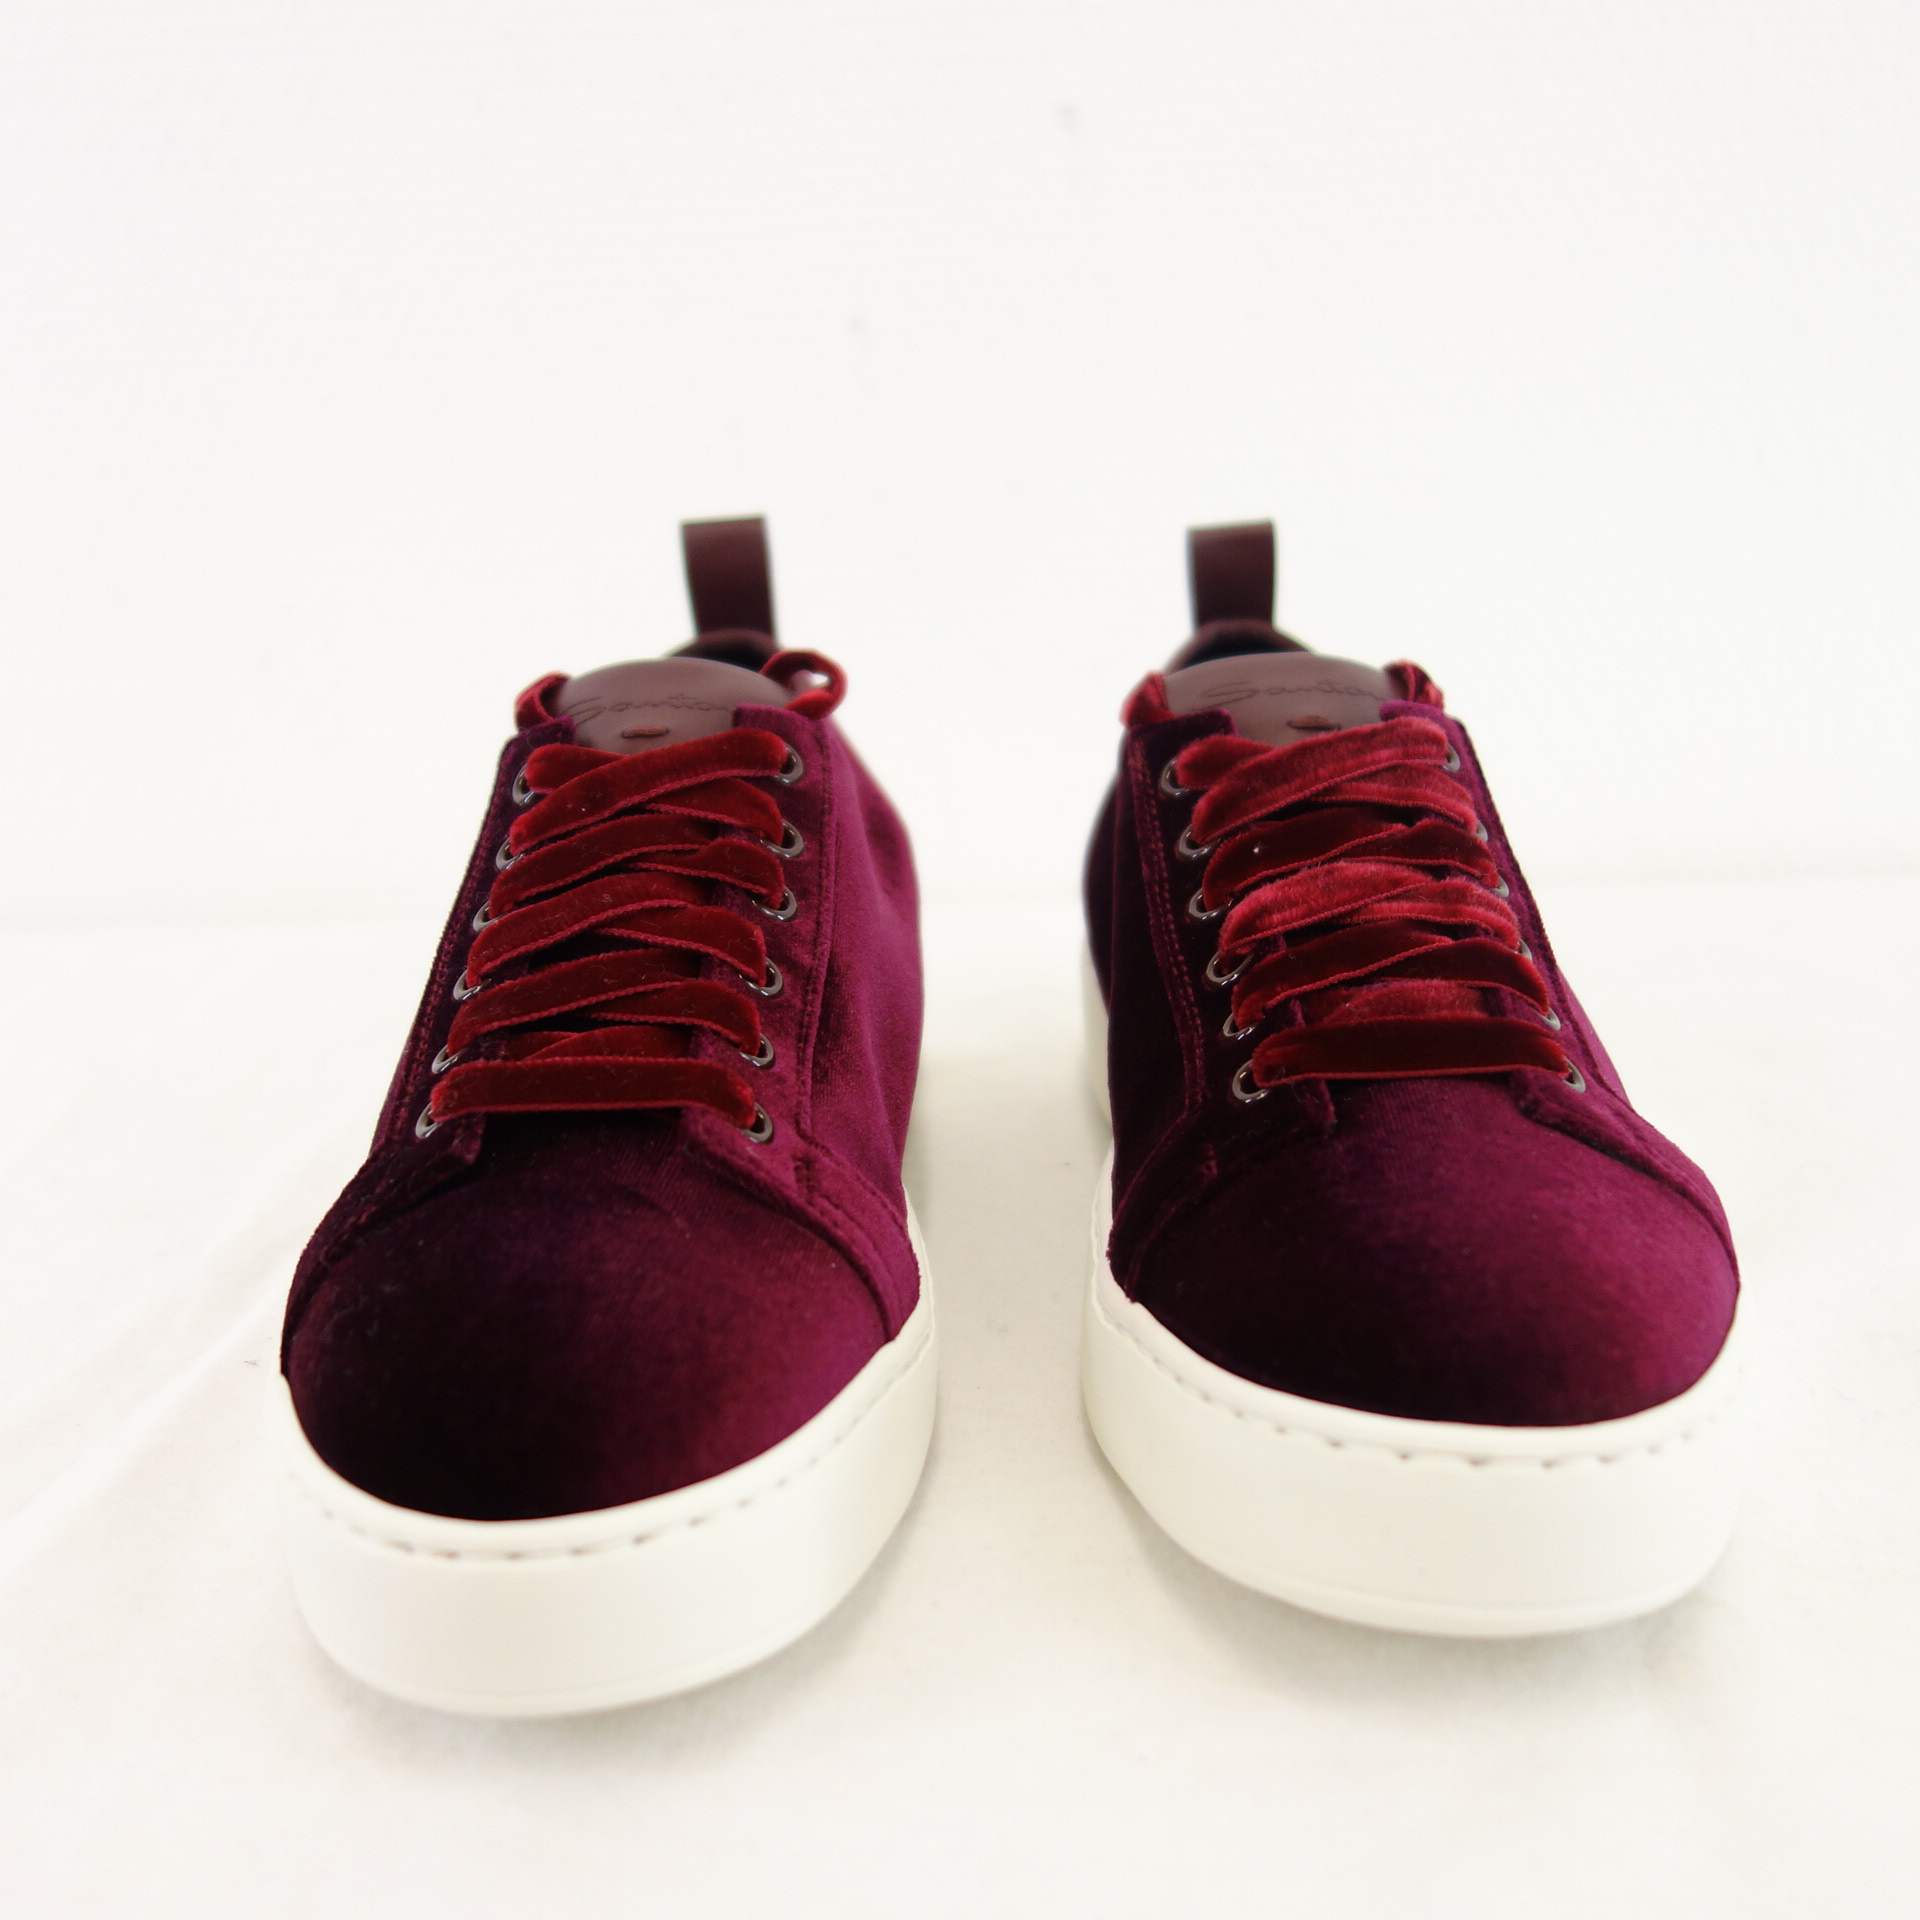 SANTONI Damen Schuhe Sportschuhe Low Top Sneaker Samt Bordeaux Rot